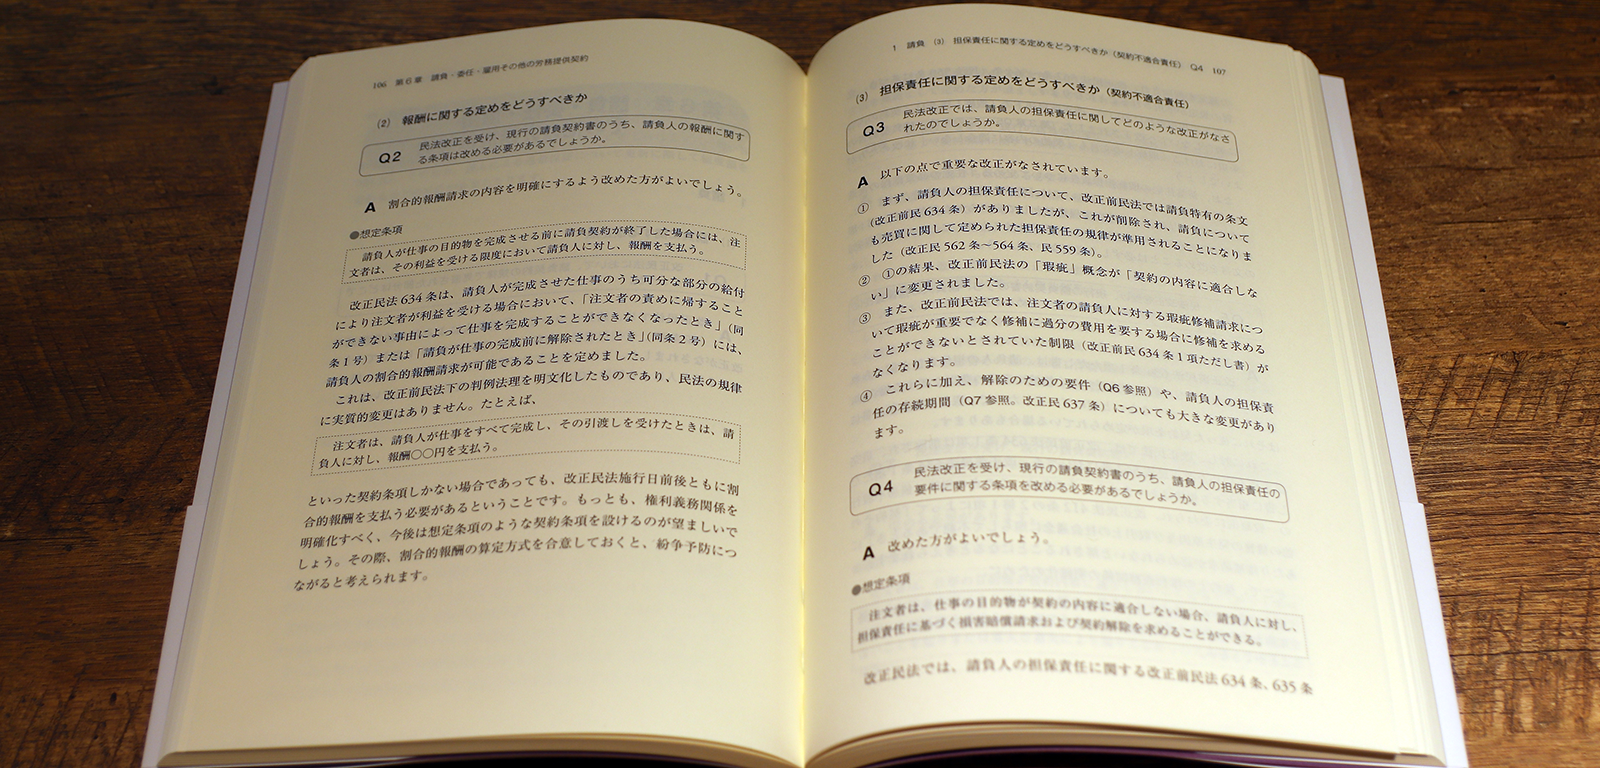 辺見紀男、武井洋一『法務担当者のための契約実務ハンドブック』P106-107